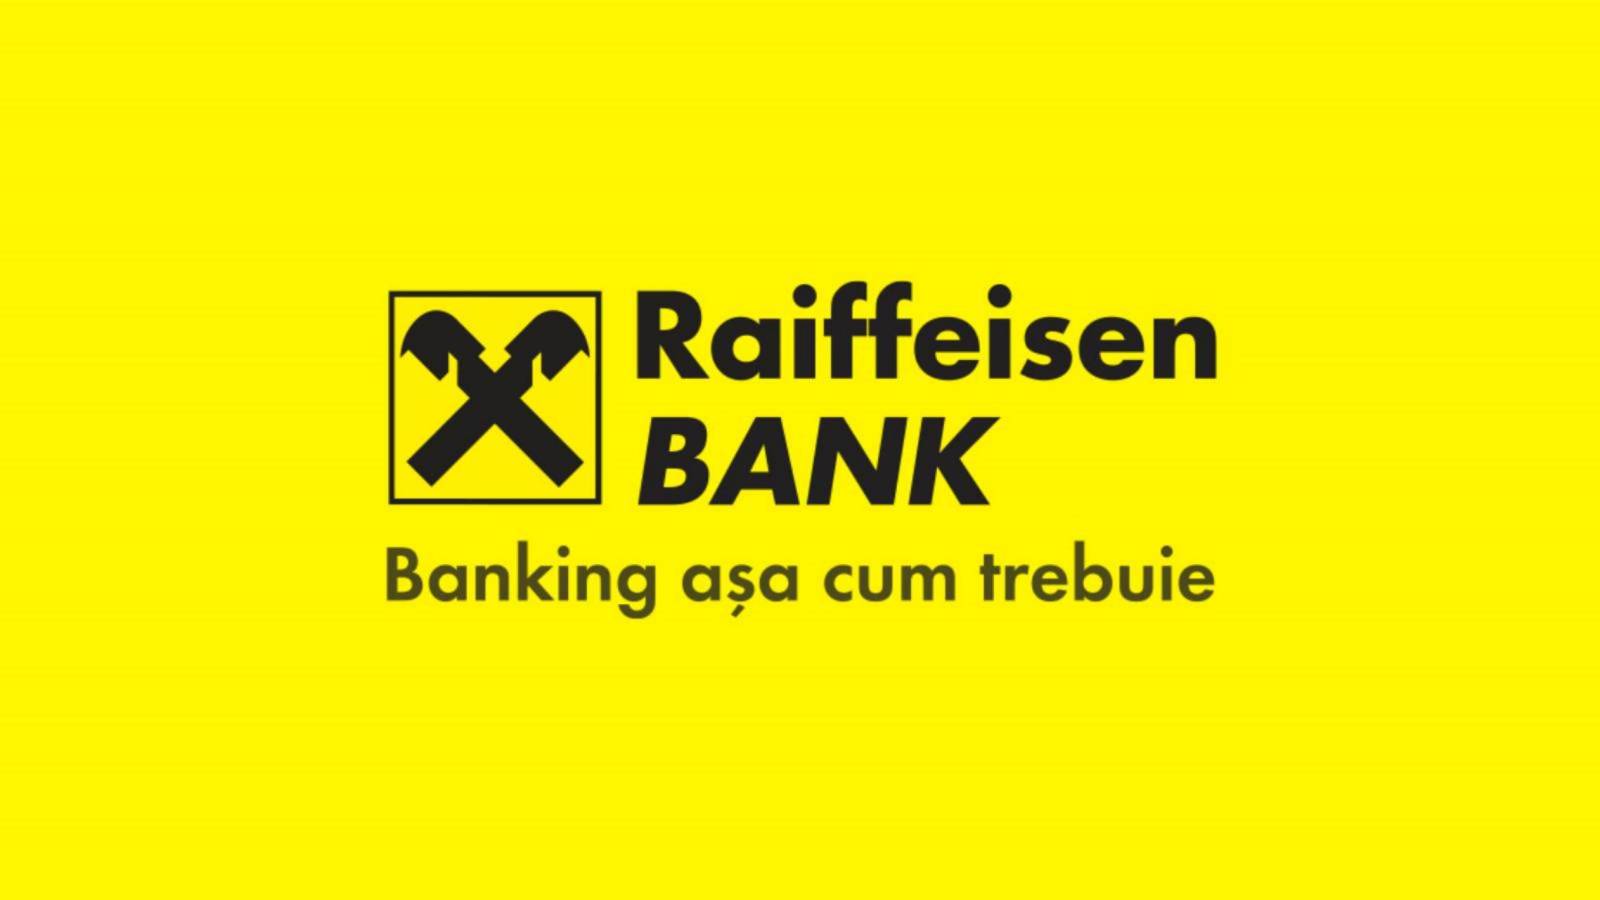 Raiffeisen Bank WICHTIG Vorteil ALLER rumänischen Kunden